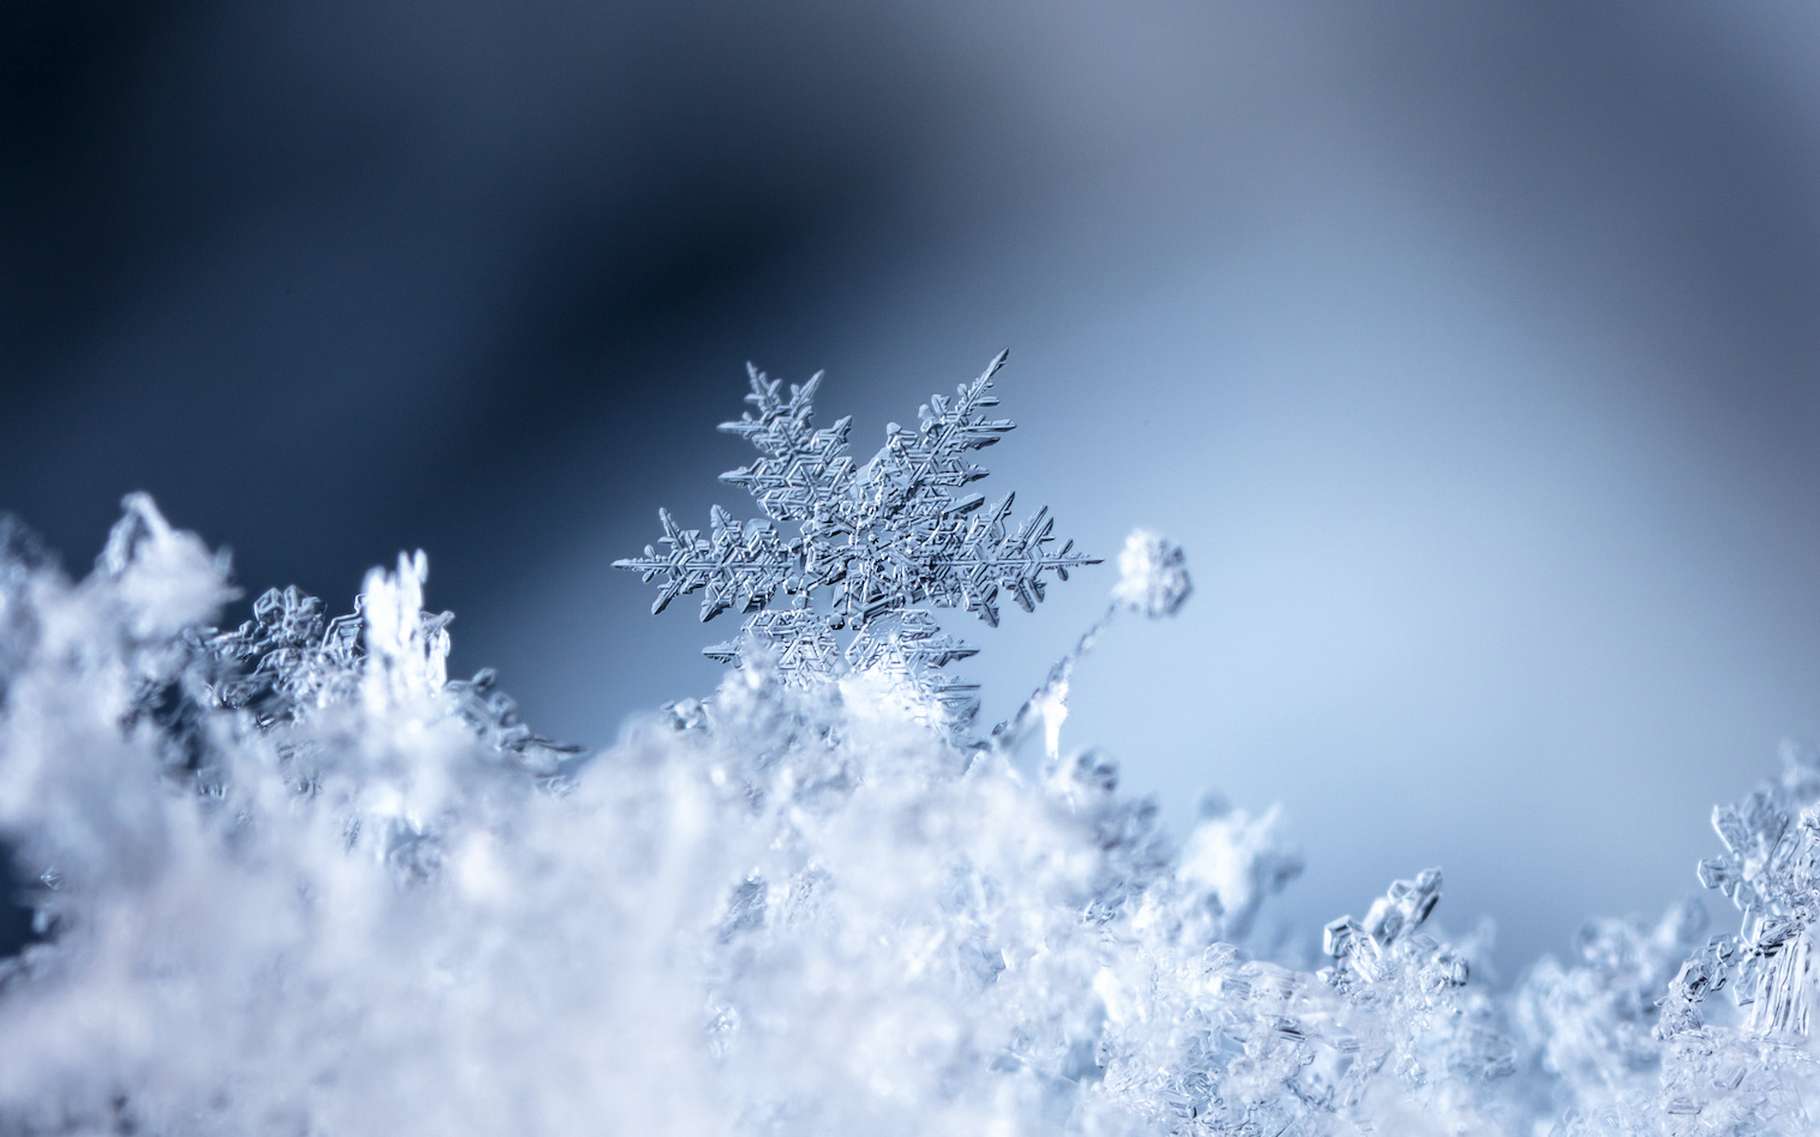 La prévision de la neige reste très délicate, même avec les progrès des prévisions météo ces dernières années. © vadim_fl, Adobe Stock